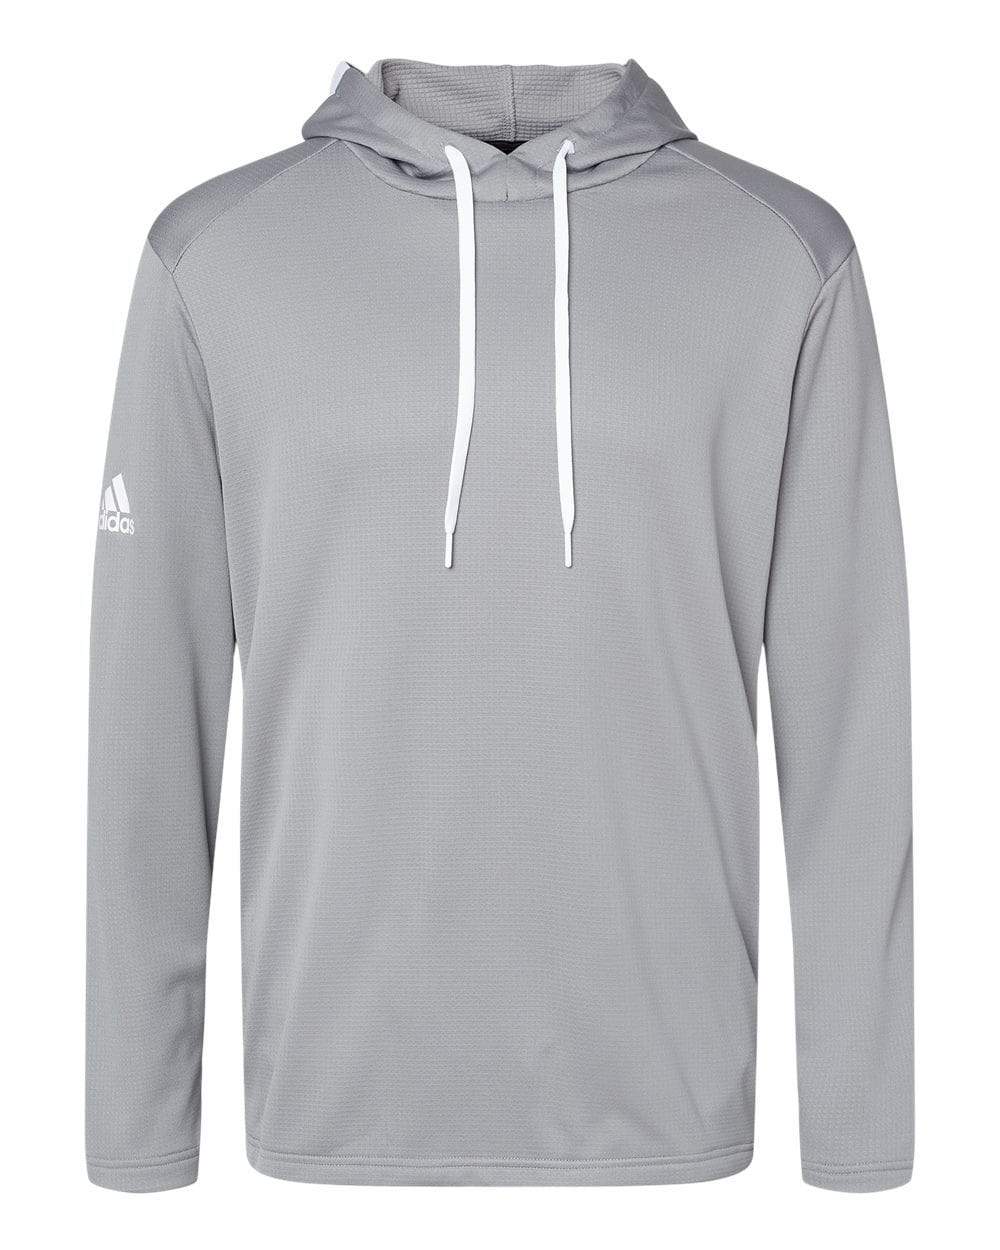 adidas Sweatshirts S / Grey Three adidas - Men's Textured Mixed Media Hooded Sweatshirt